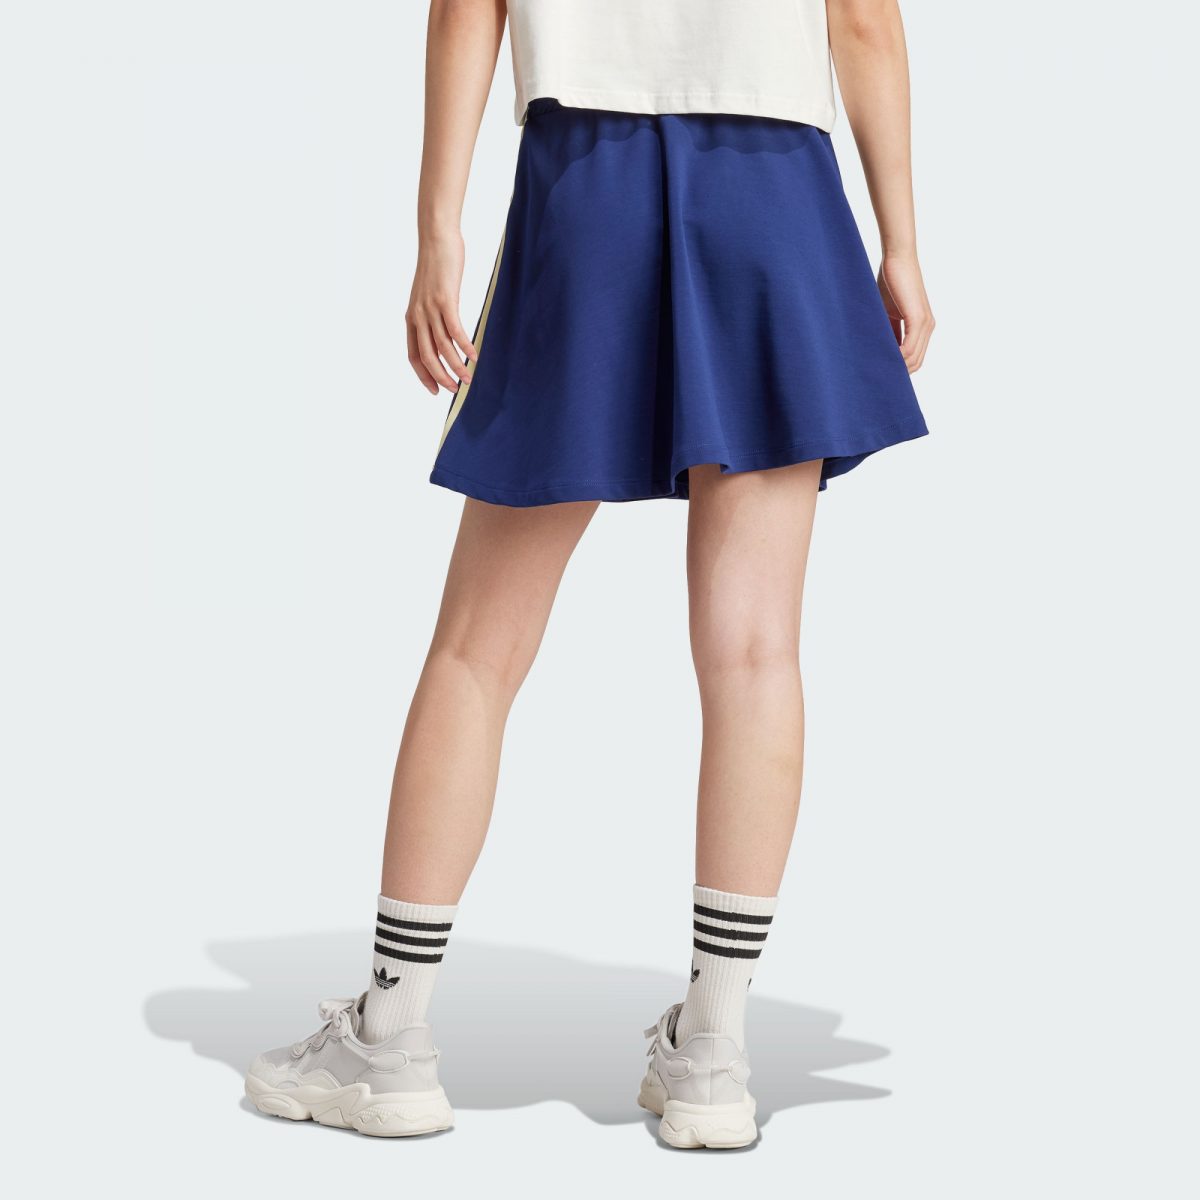 Женская юбка adidas SKIRT синяя фотография